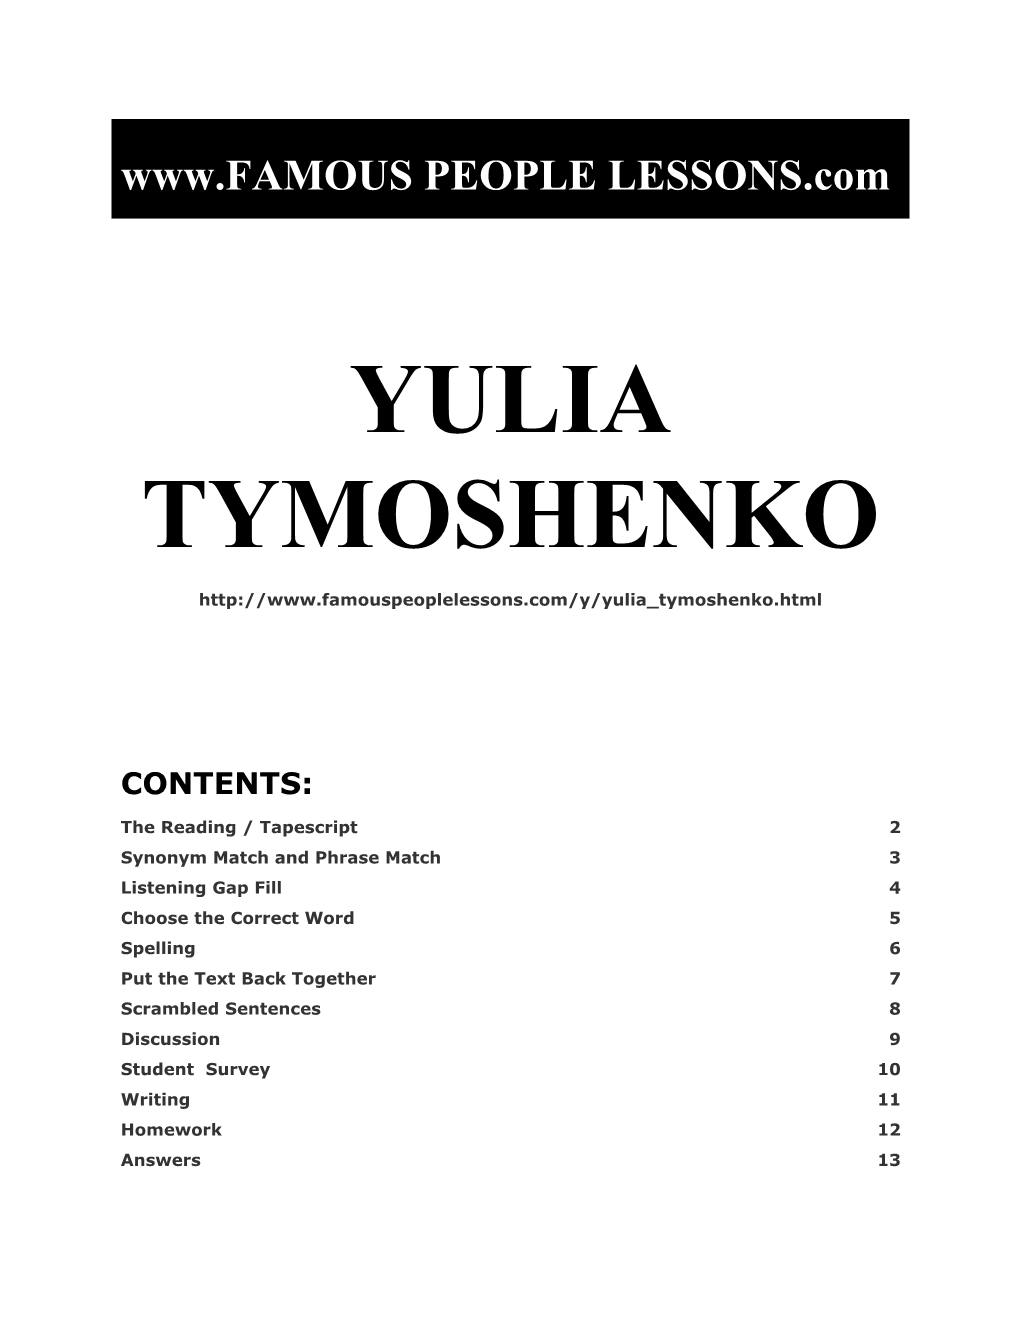 Famous People Lessons - Yulia Tymoshenko